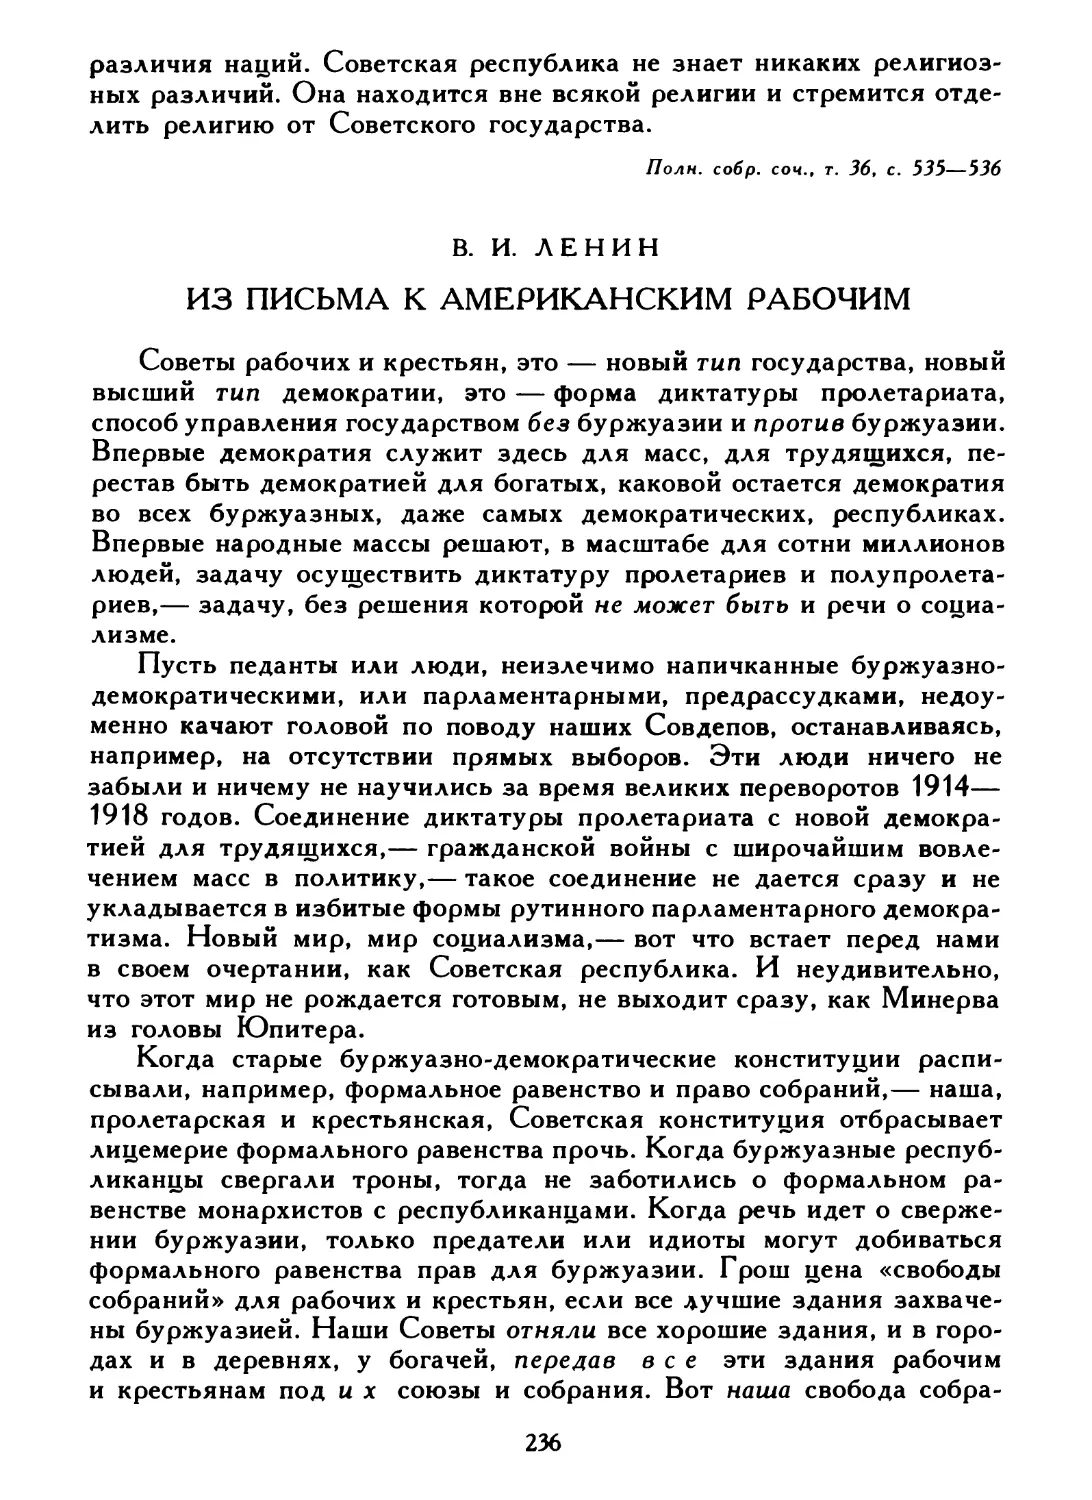 В. И. Ленин. Из письма к американским рабочим, 20 августа 1918 г.